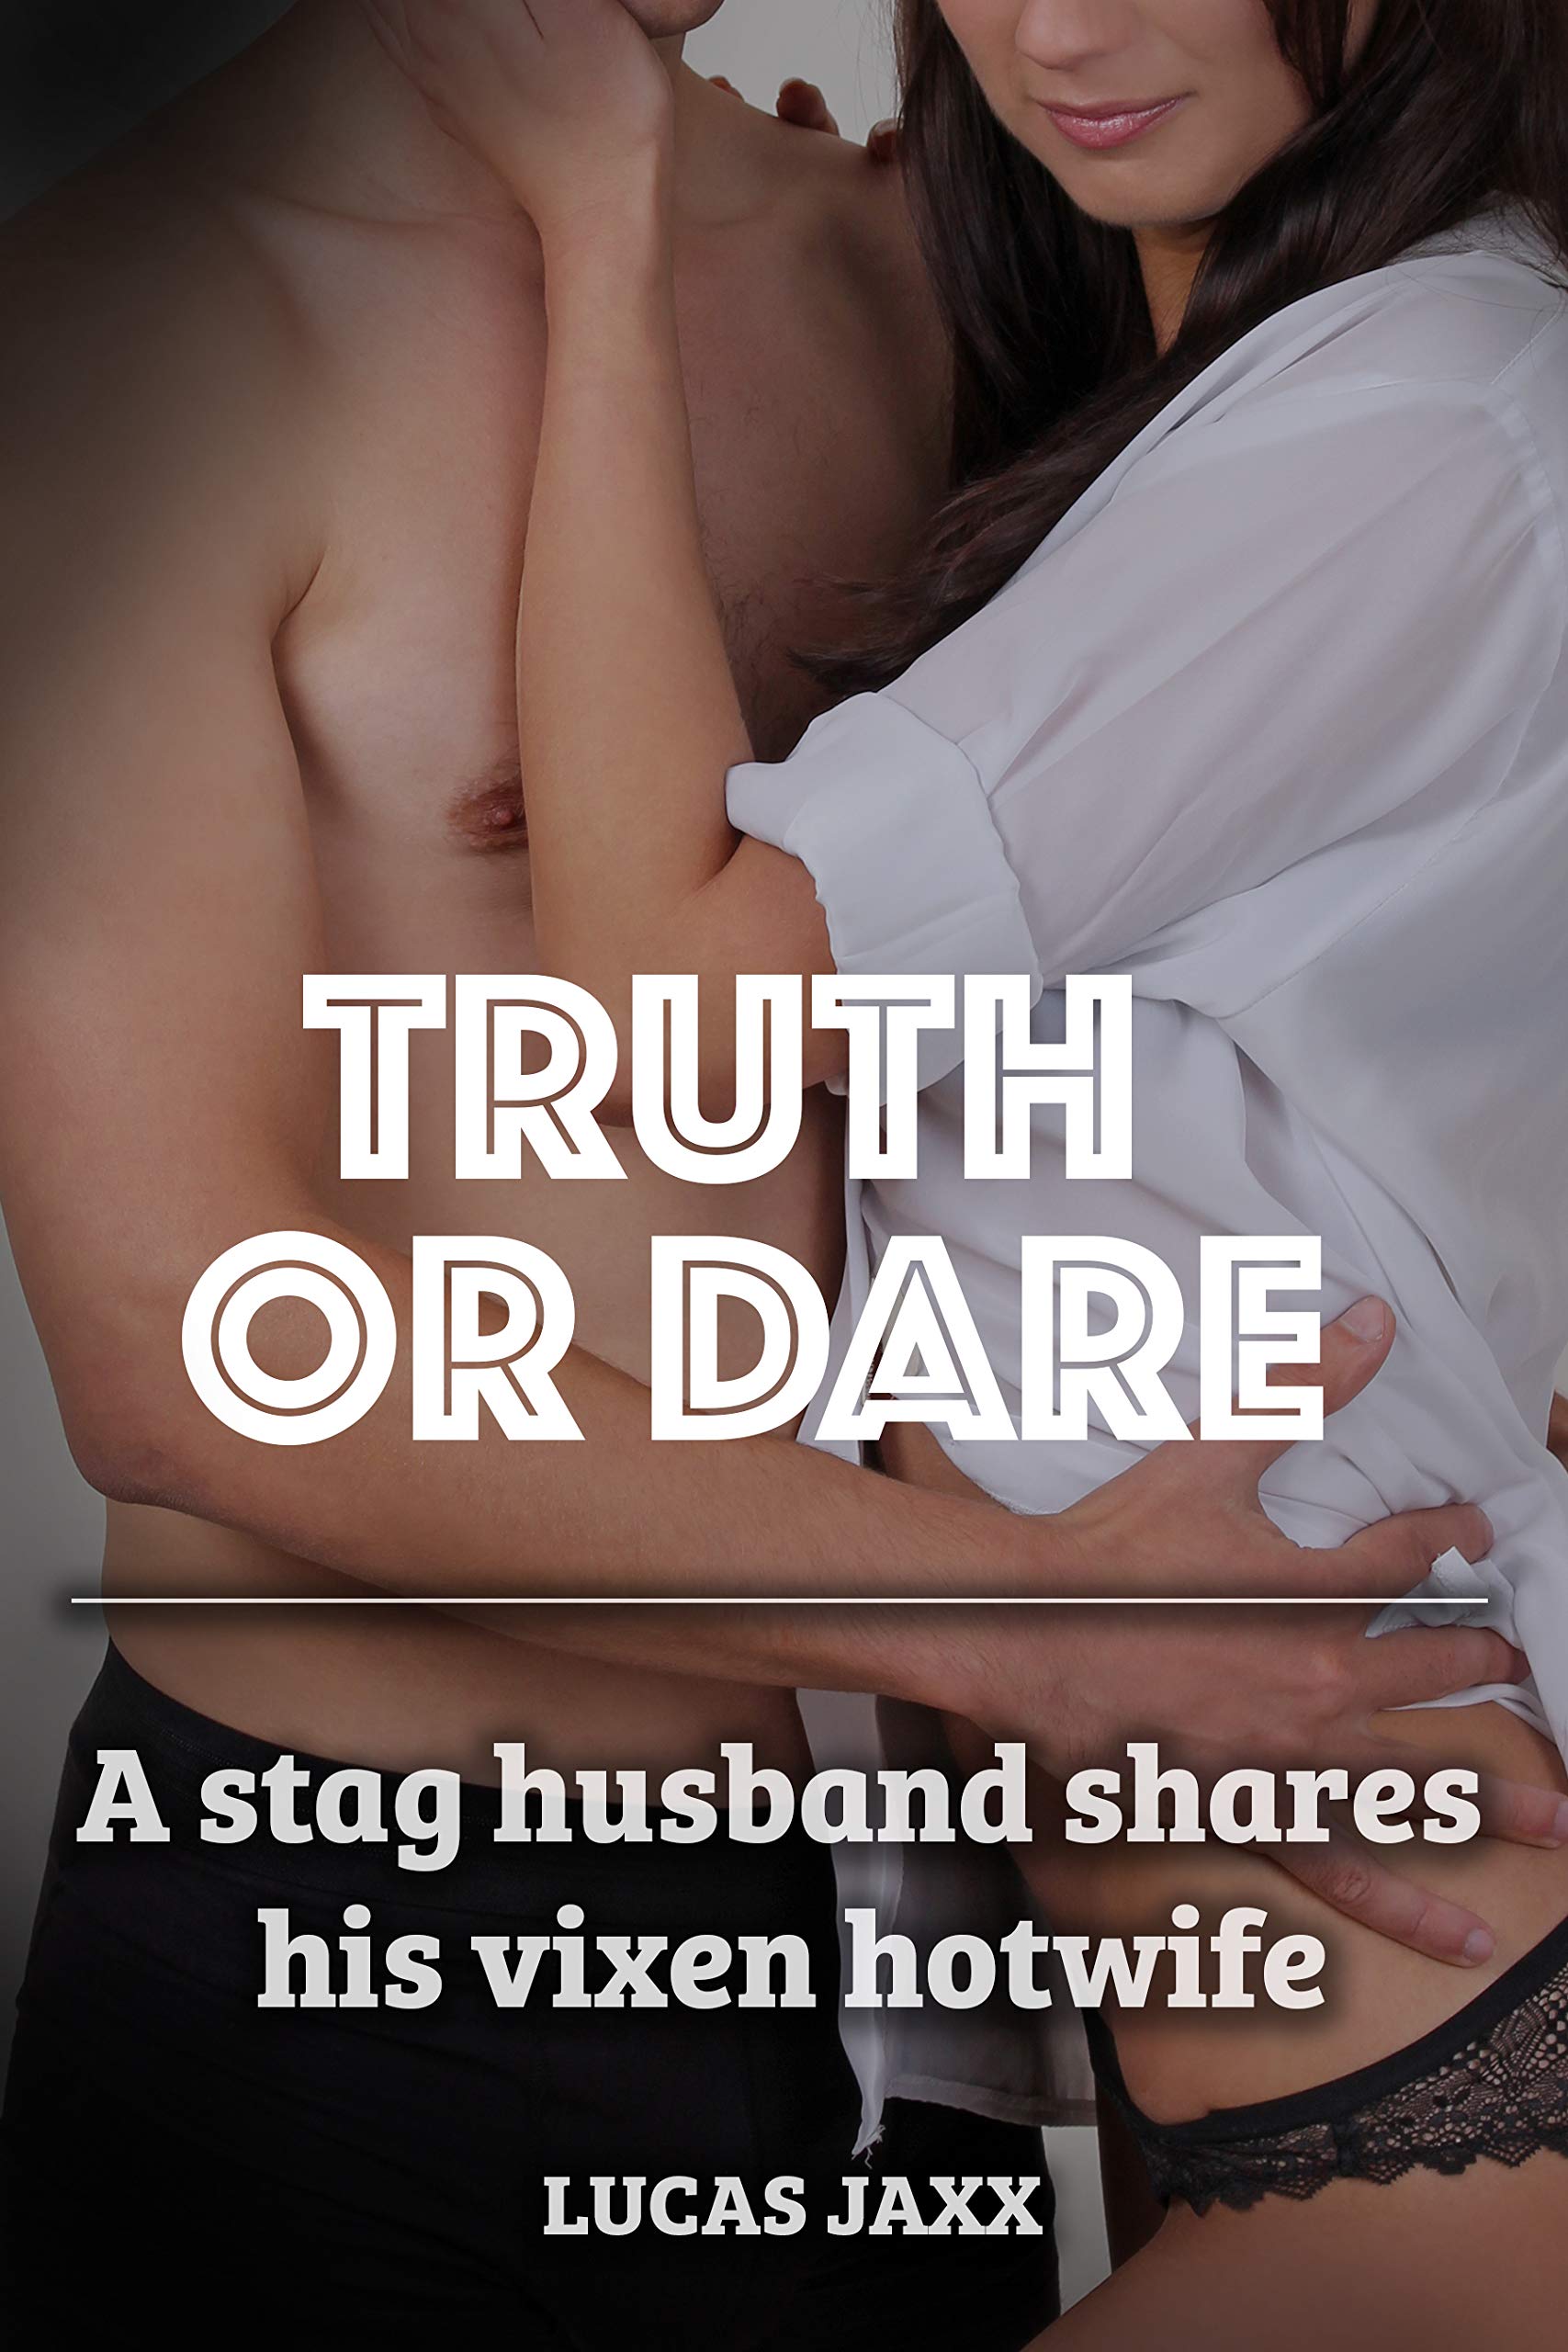 truth or dare wife pics